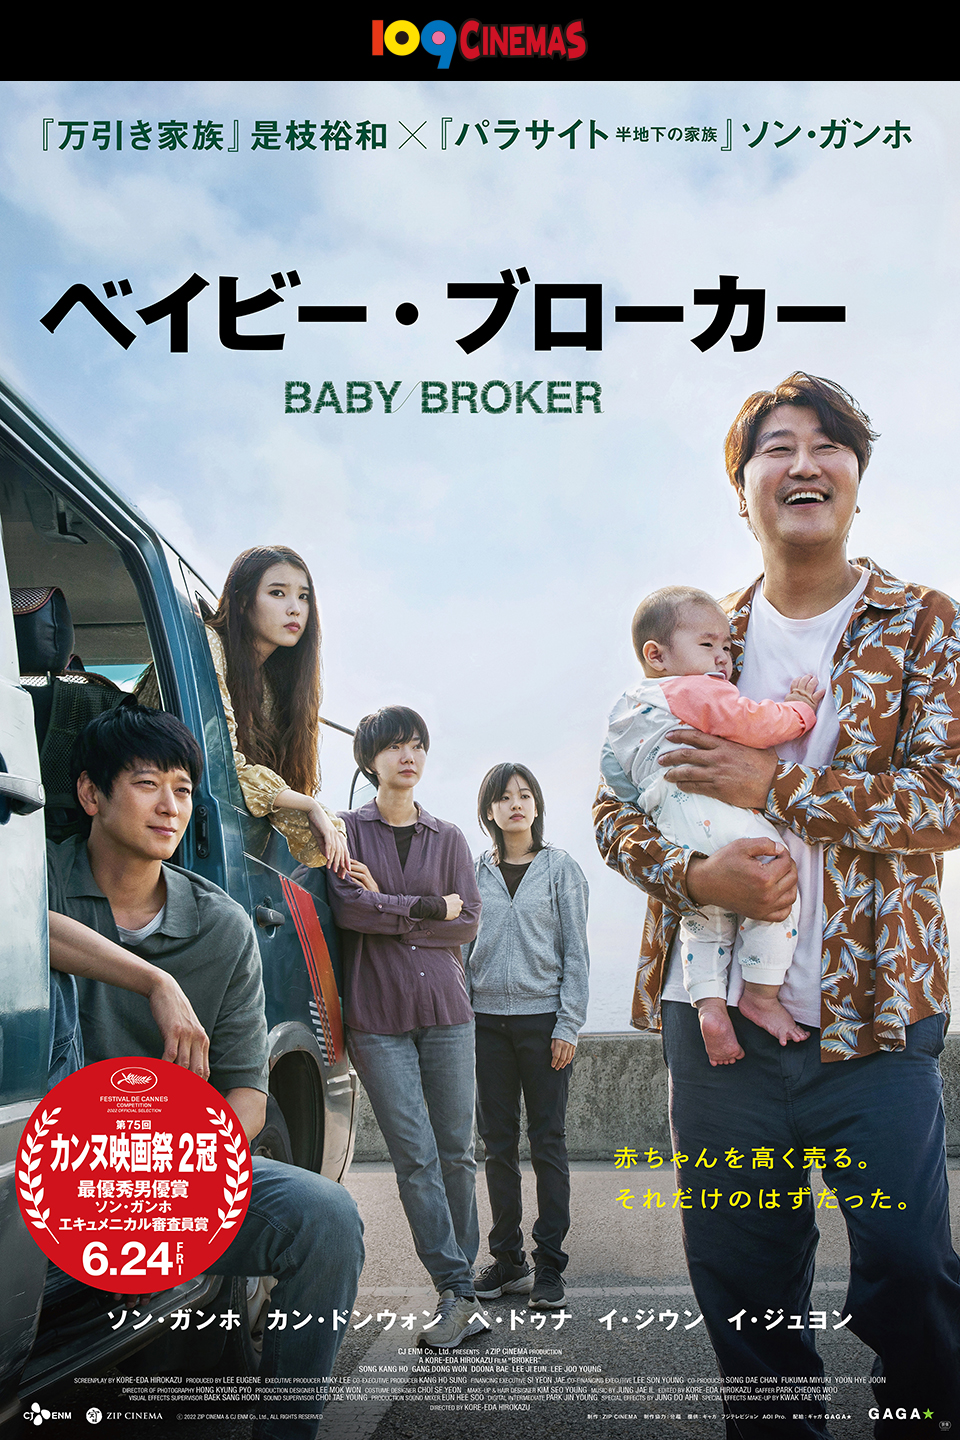 『万引き家族』是枝裕和×『パラサイト 半地下の家族』ソン・ガンホ 『ベイビー・ブローカー』　赤ちゃんを高く売る。それだけのはずだった。